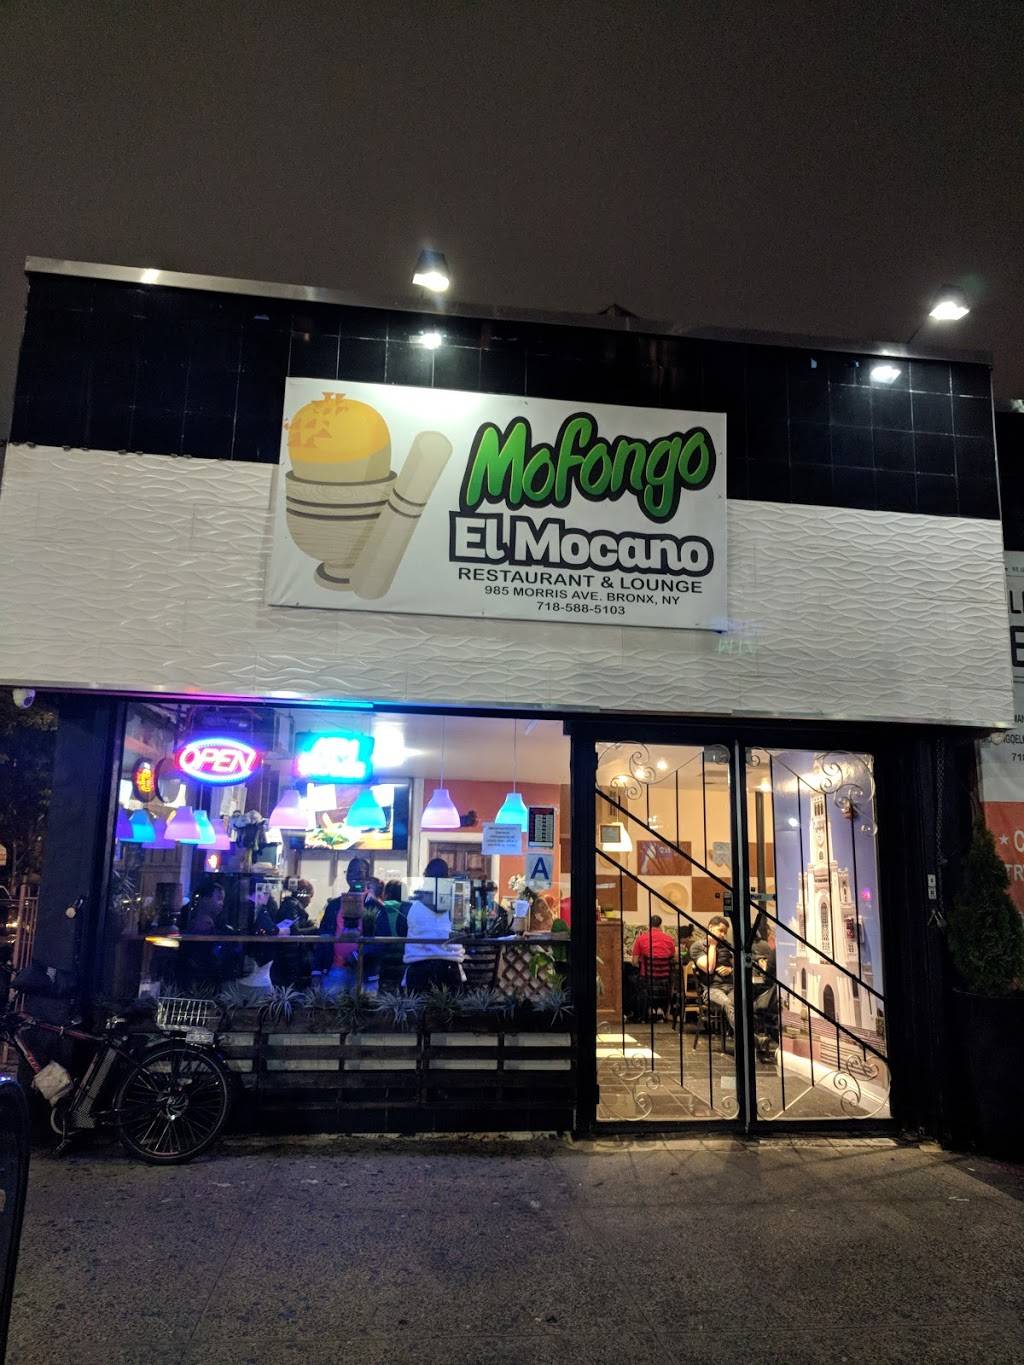 Mofongo El Mocano | restaurant | 985 Morris Ave, Bronx, NY 10456, USA | 7185885103 OR +1 718-588-5103